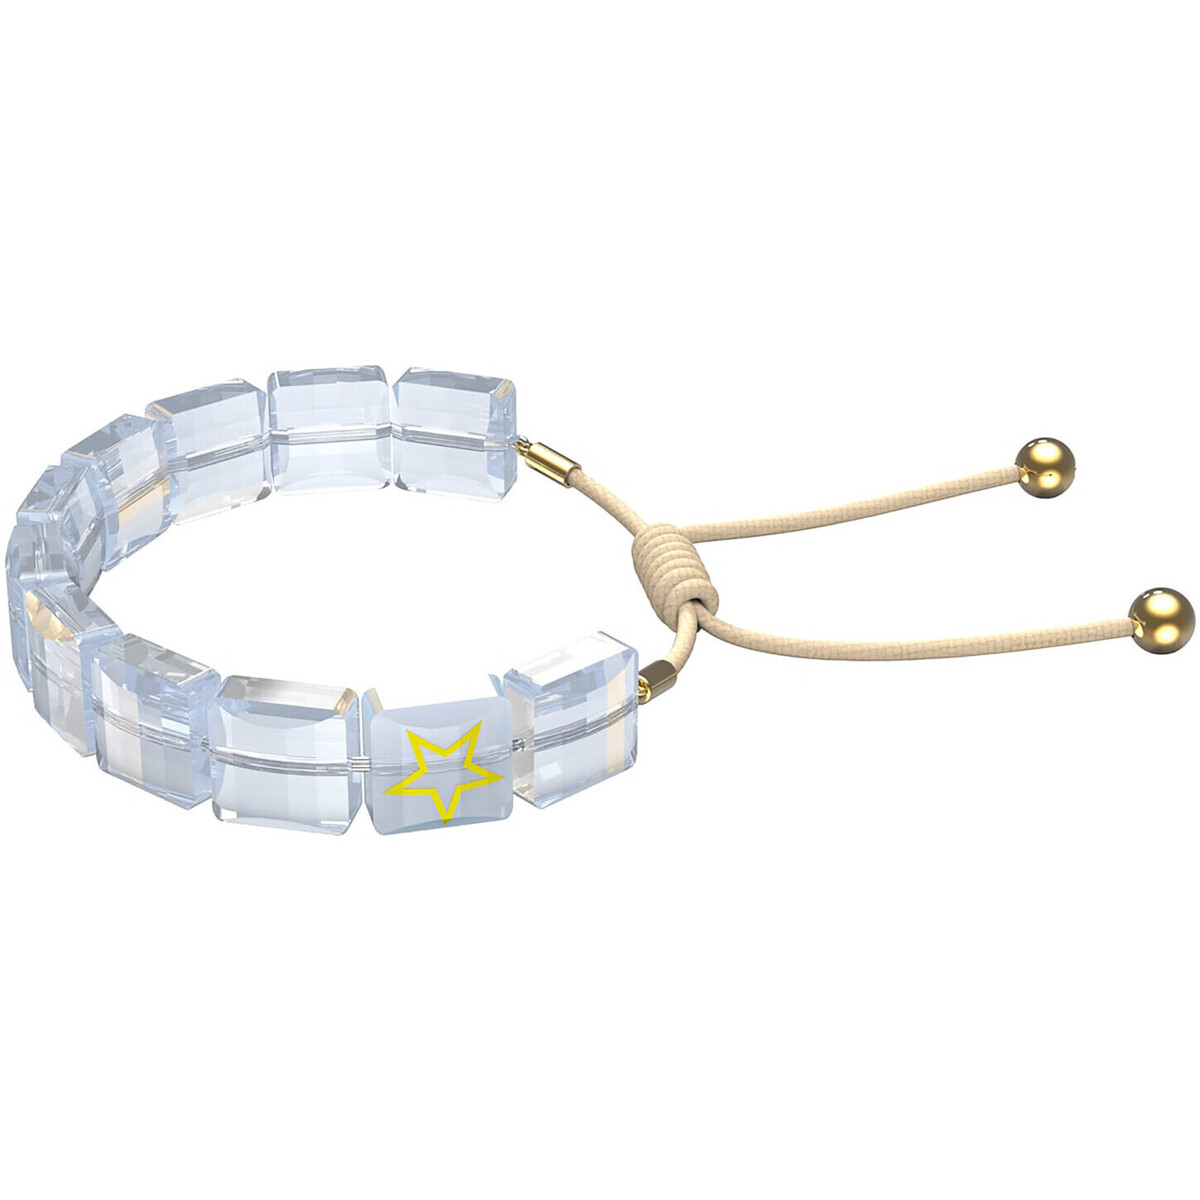 Livraison gratuite* et Retour offert Bracelets Swarovski Bracelet  Letra doré étoile Jaune